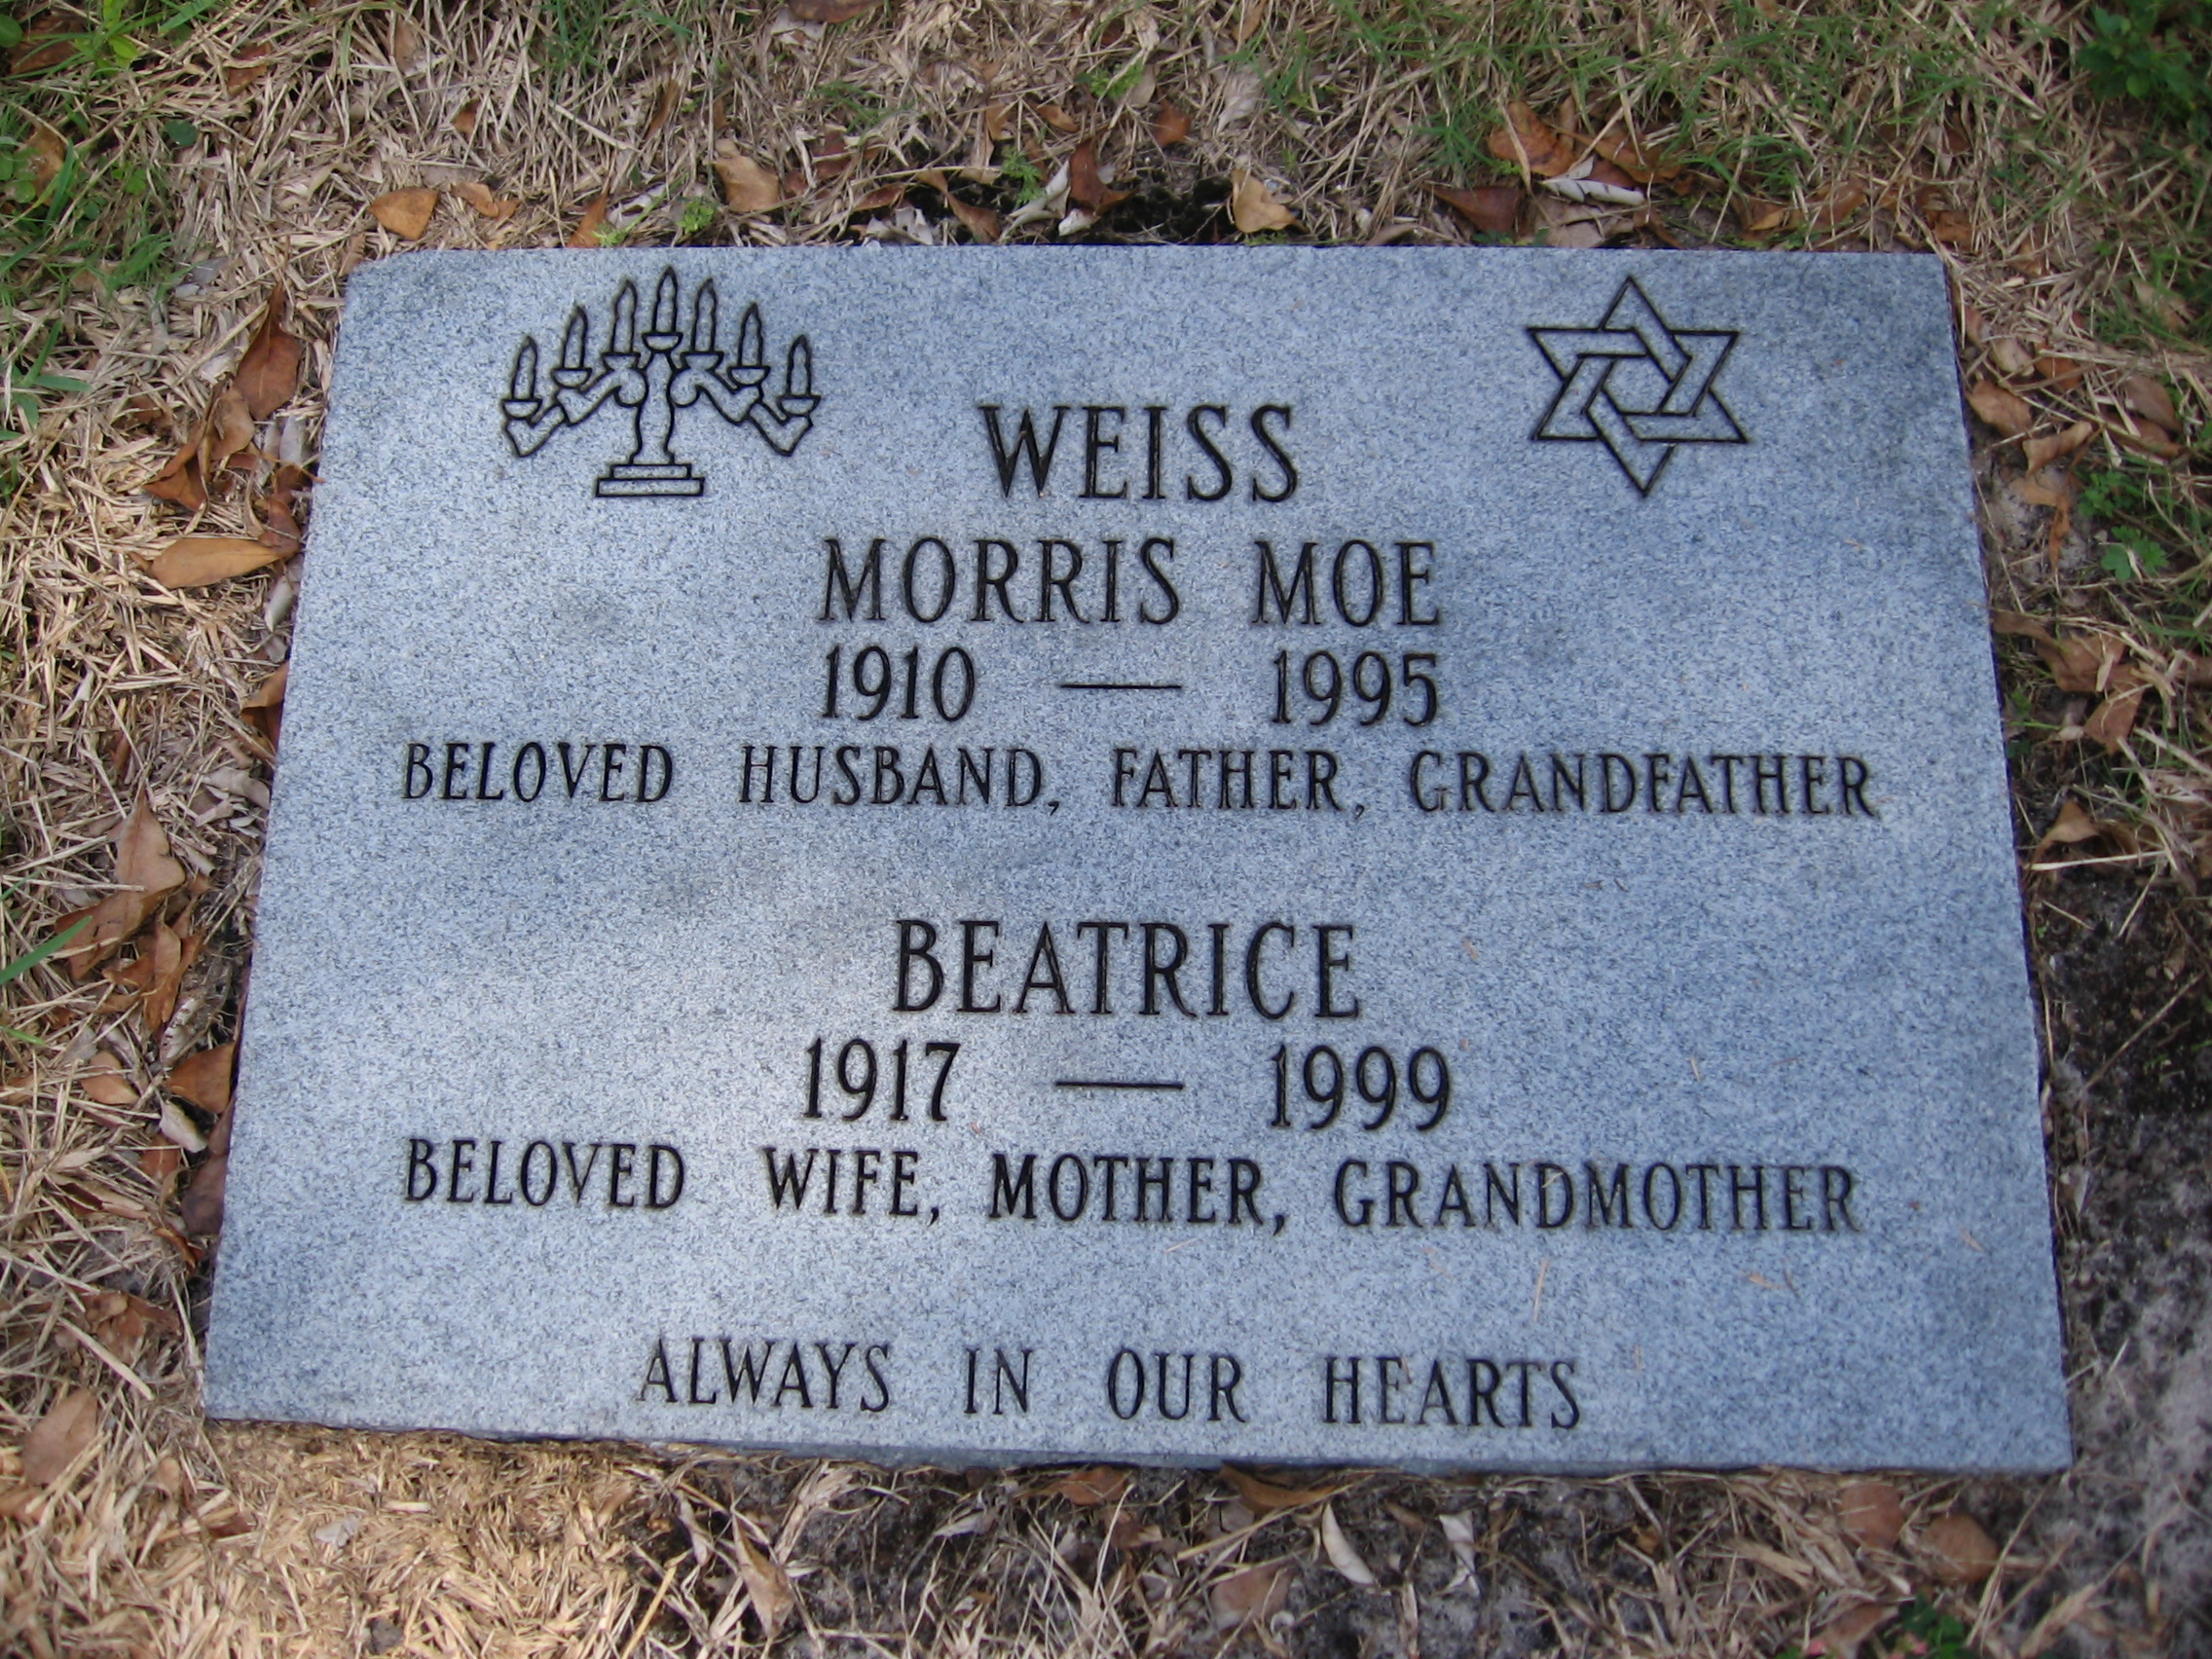 Morris Moe Weiss